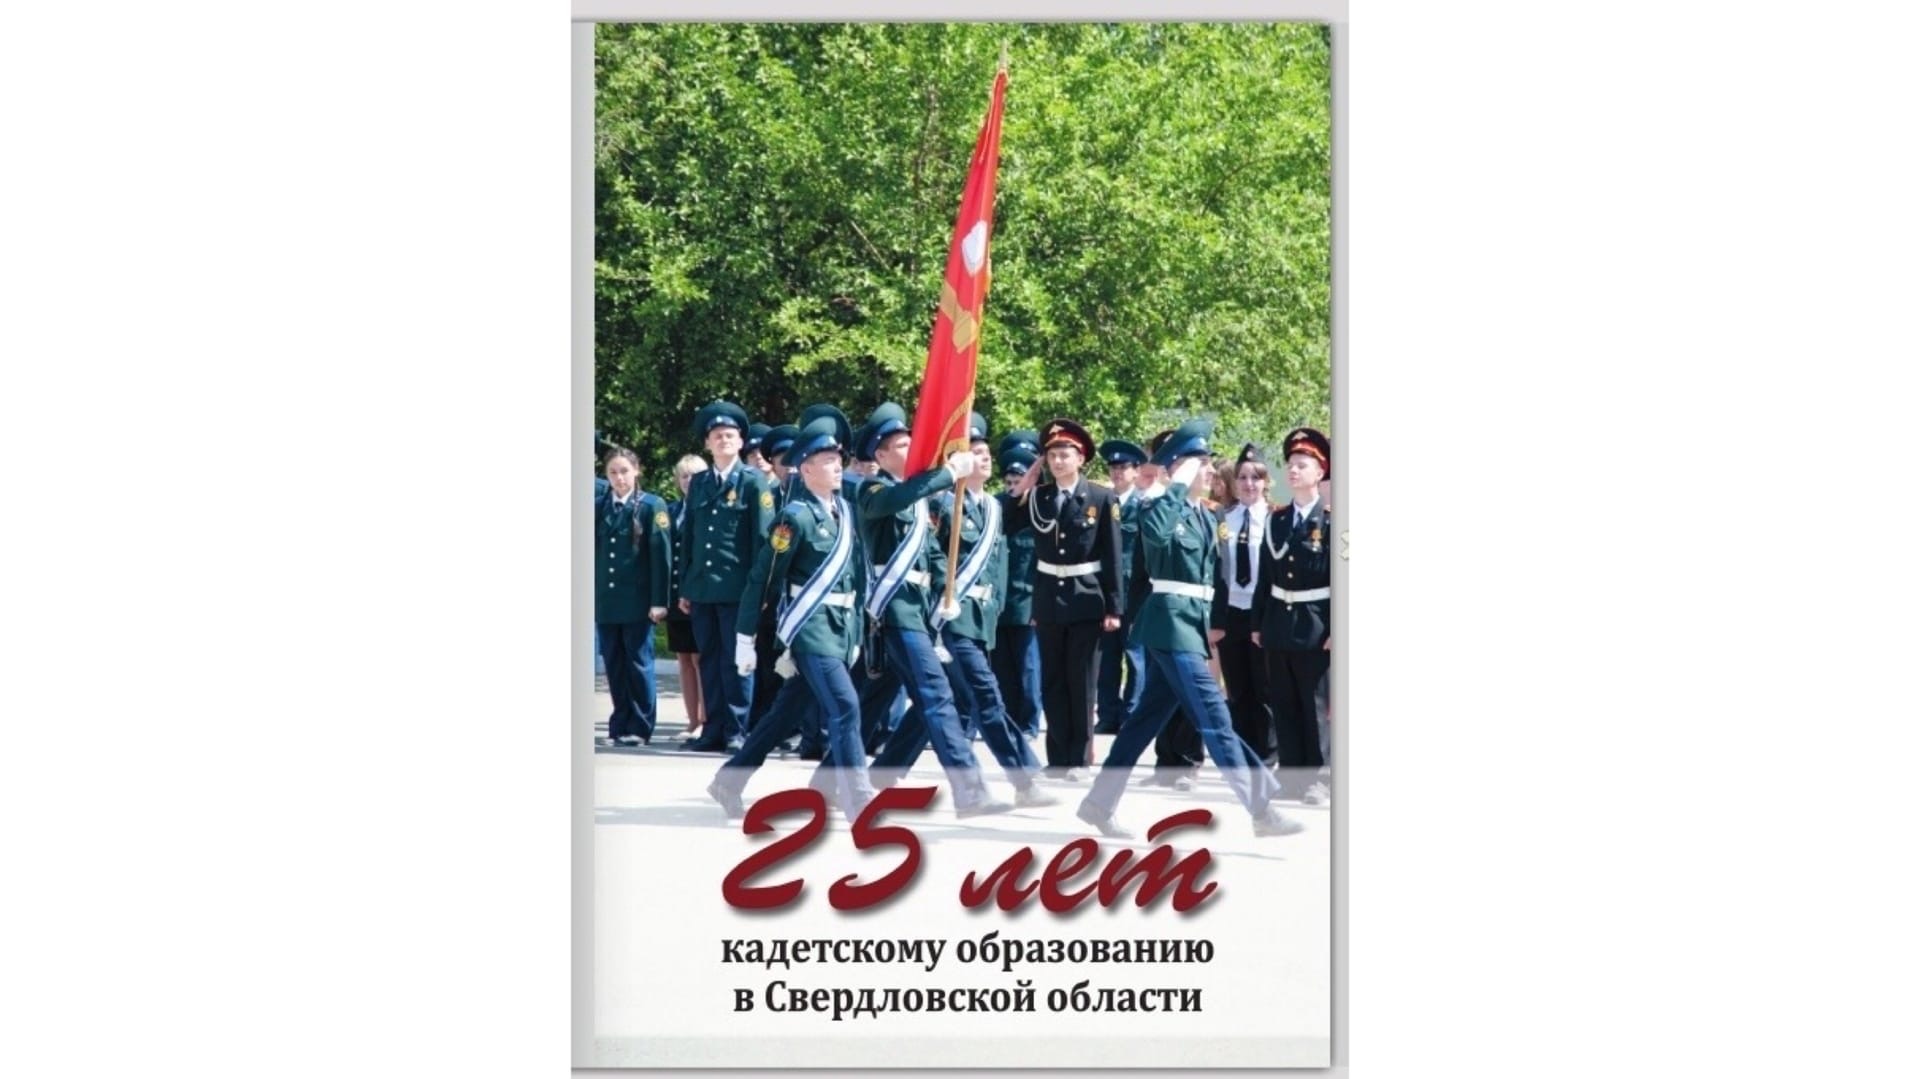 Вышла в свет книга, посвященная кадетскому образования в Свердловской области